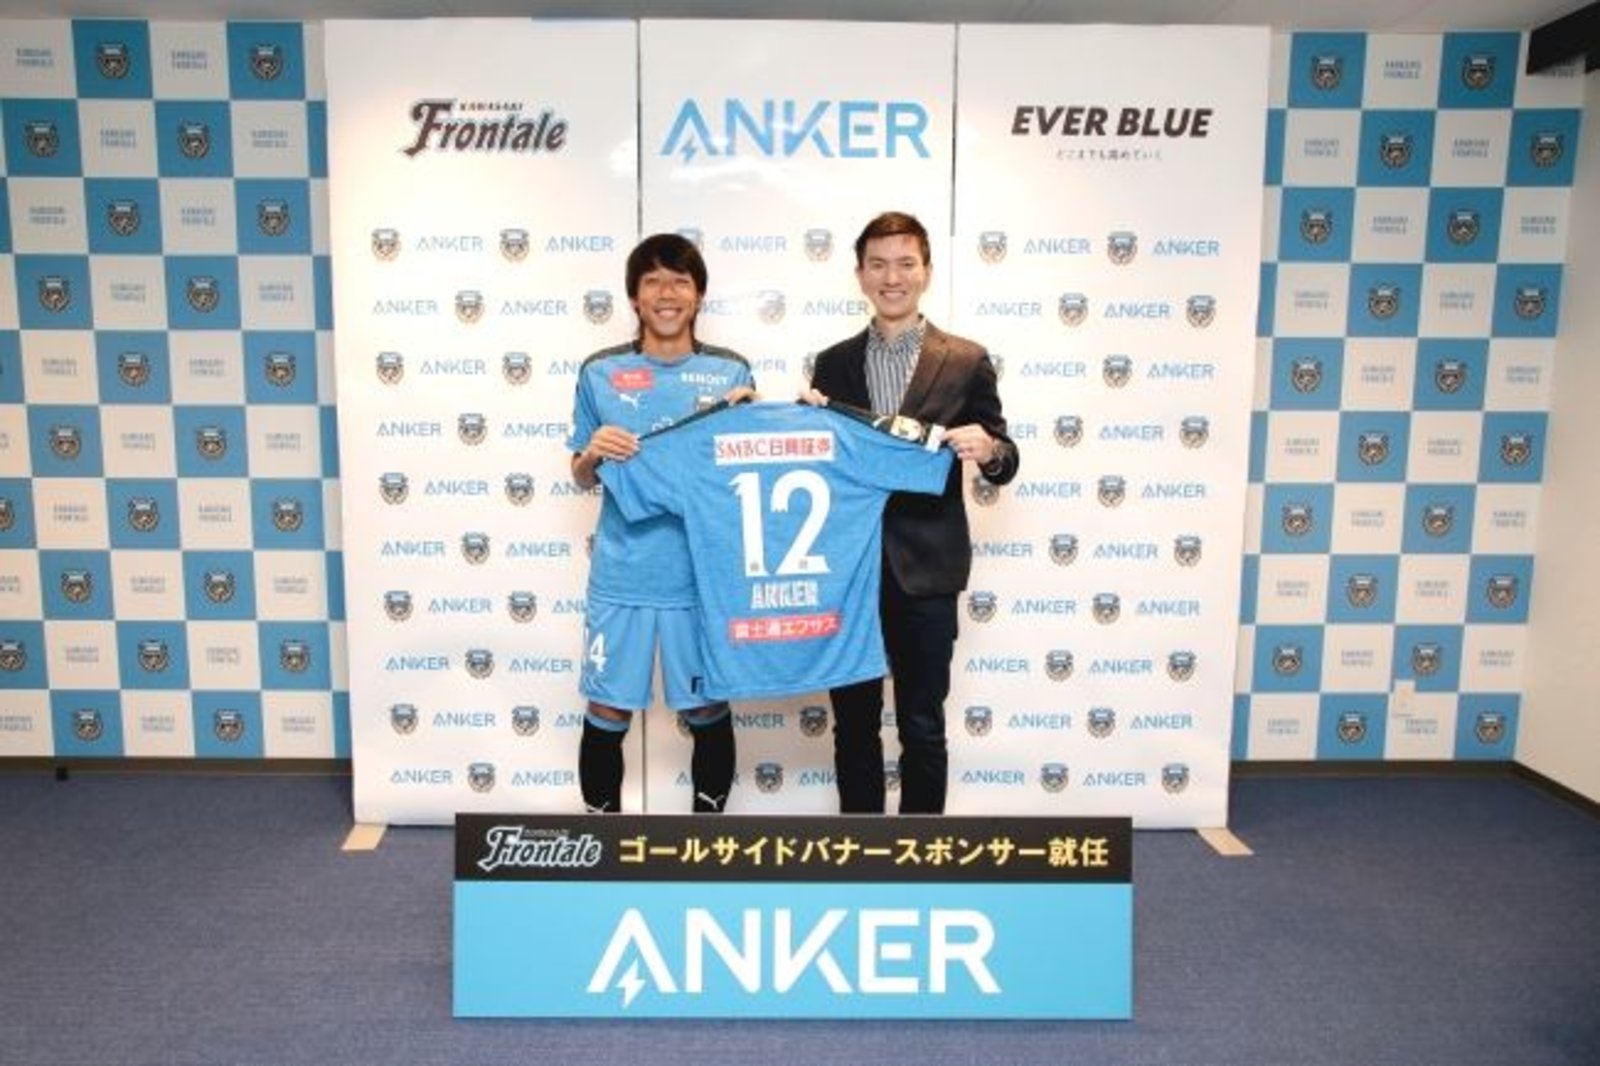 アンカー サッカーj1の川崎フロンターレとスポンサー契約 ネットショップ担当者フォーラム